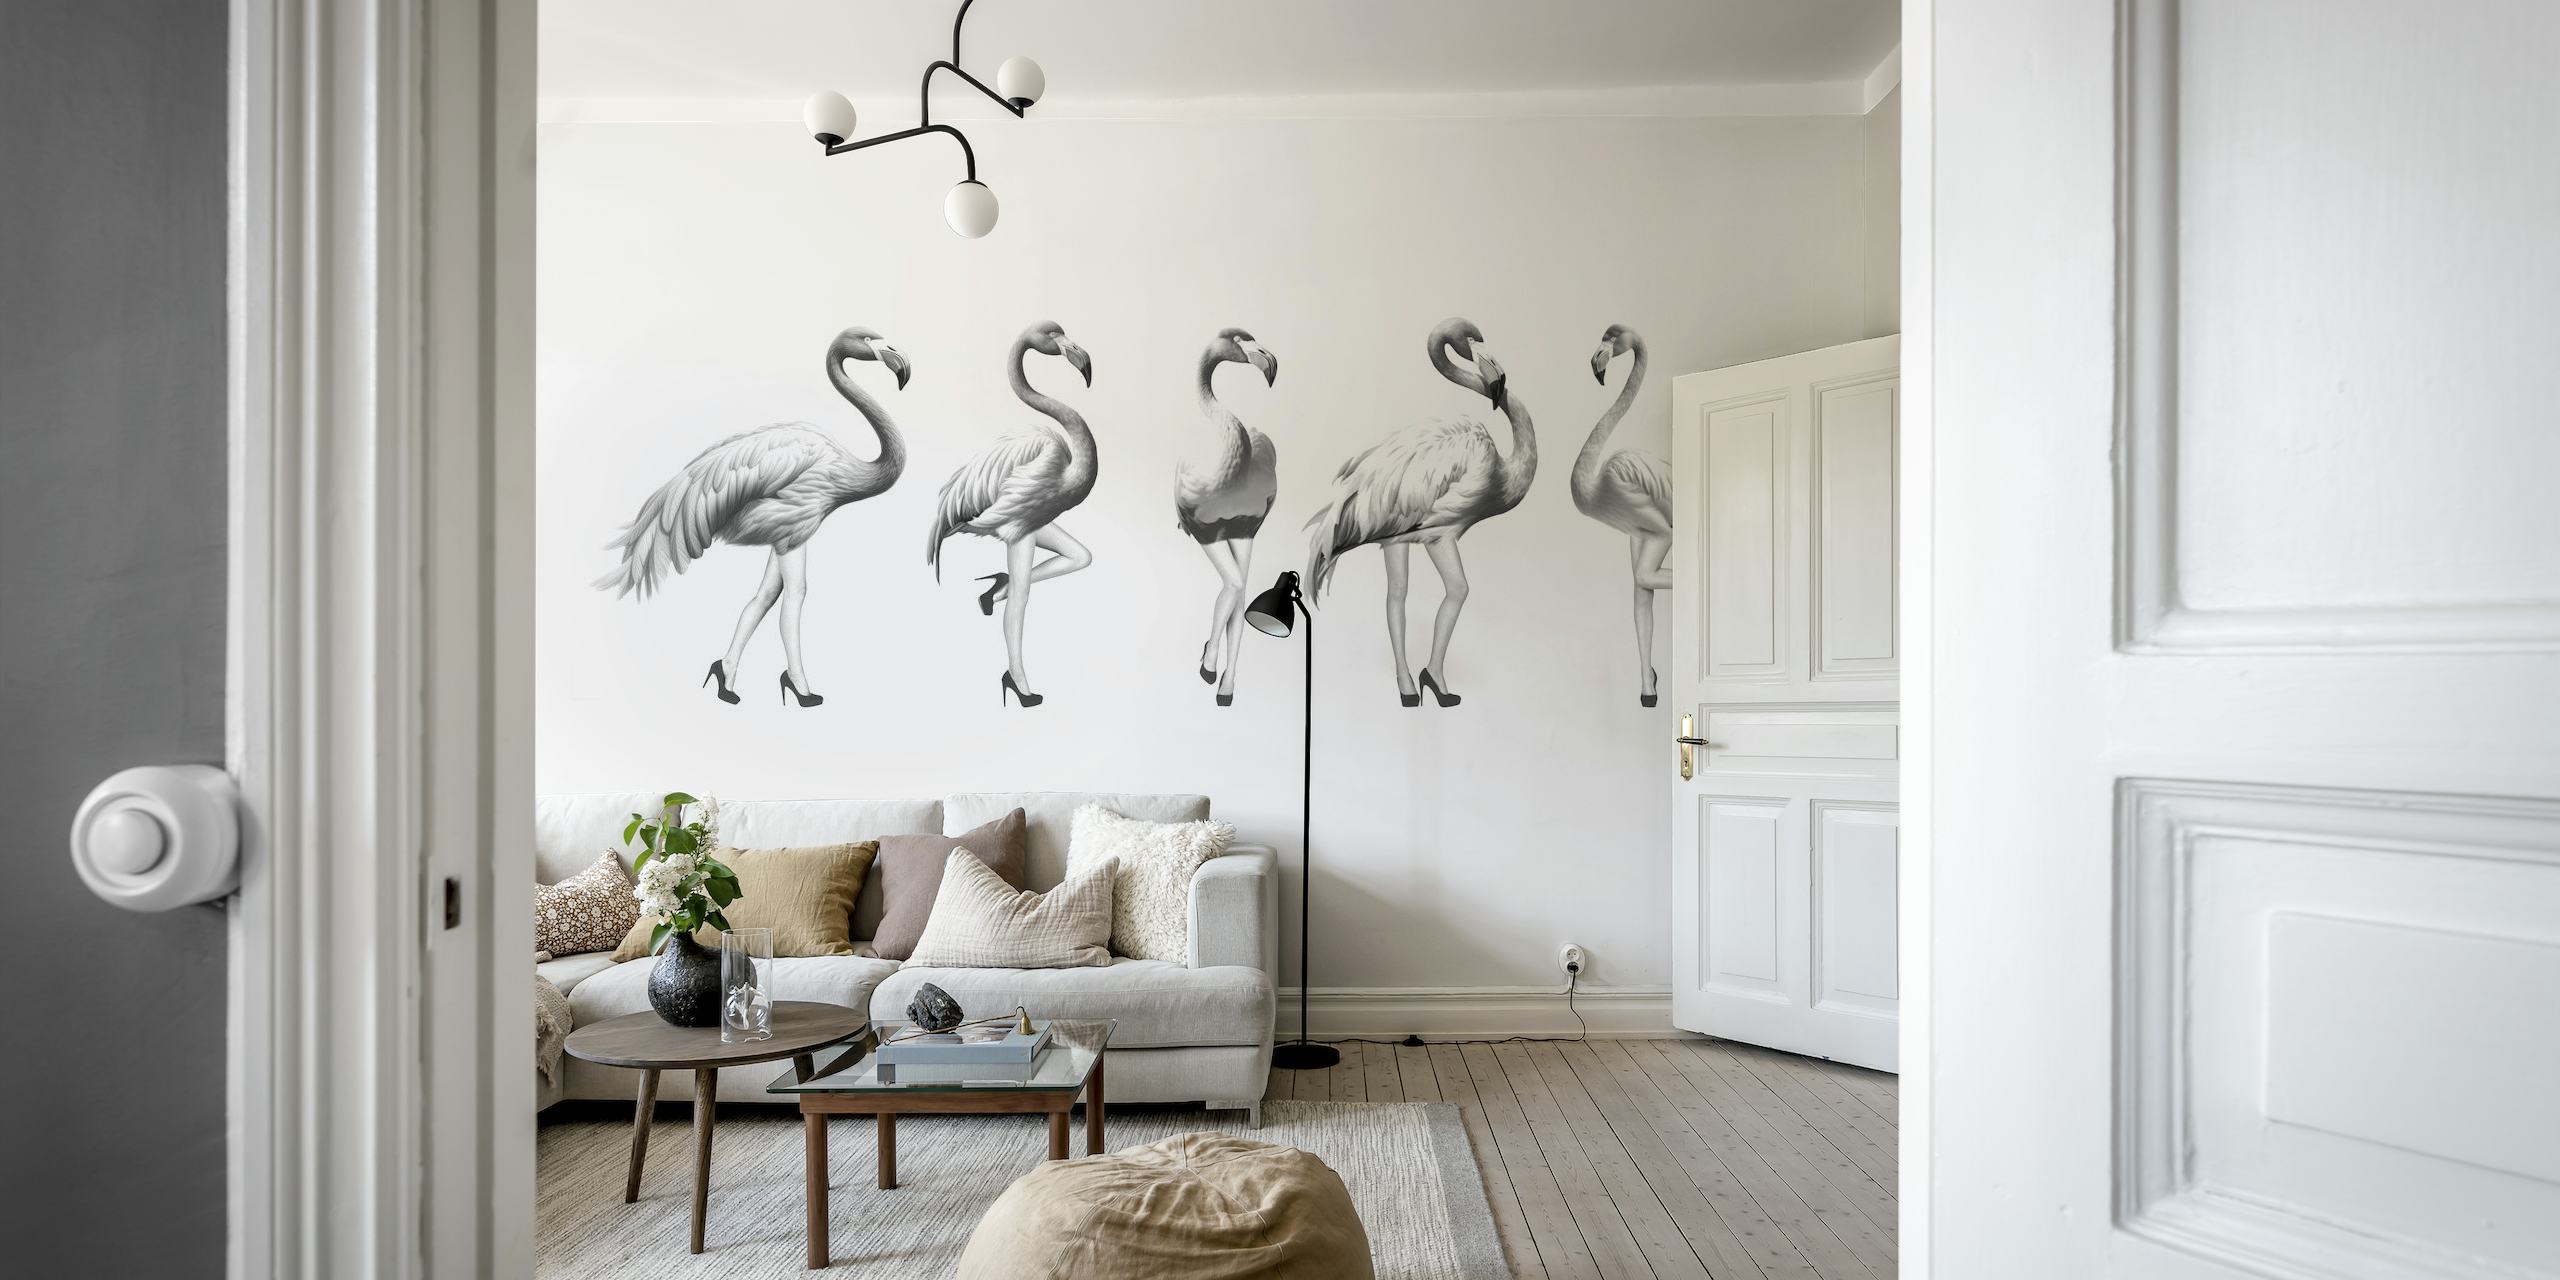 Sort/hvid vægmaleri af legende flamingoer i grå nuancer